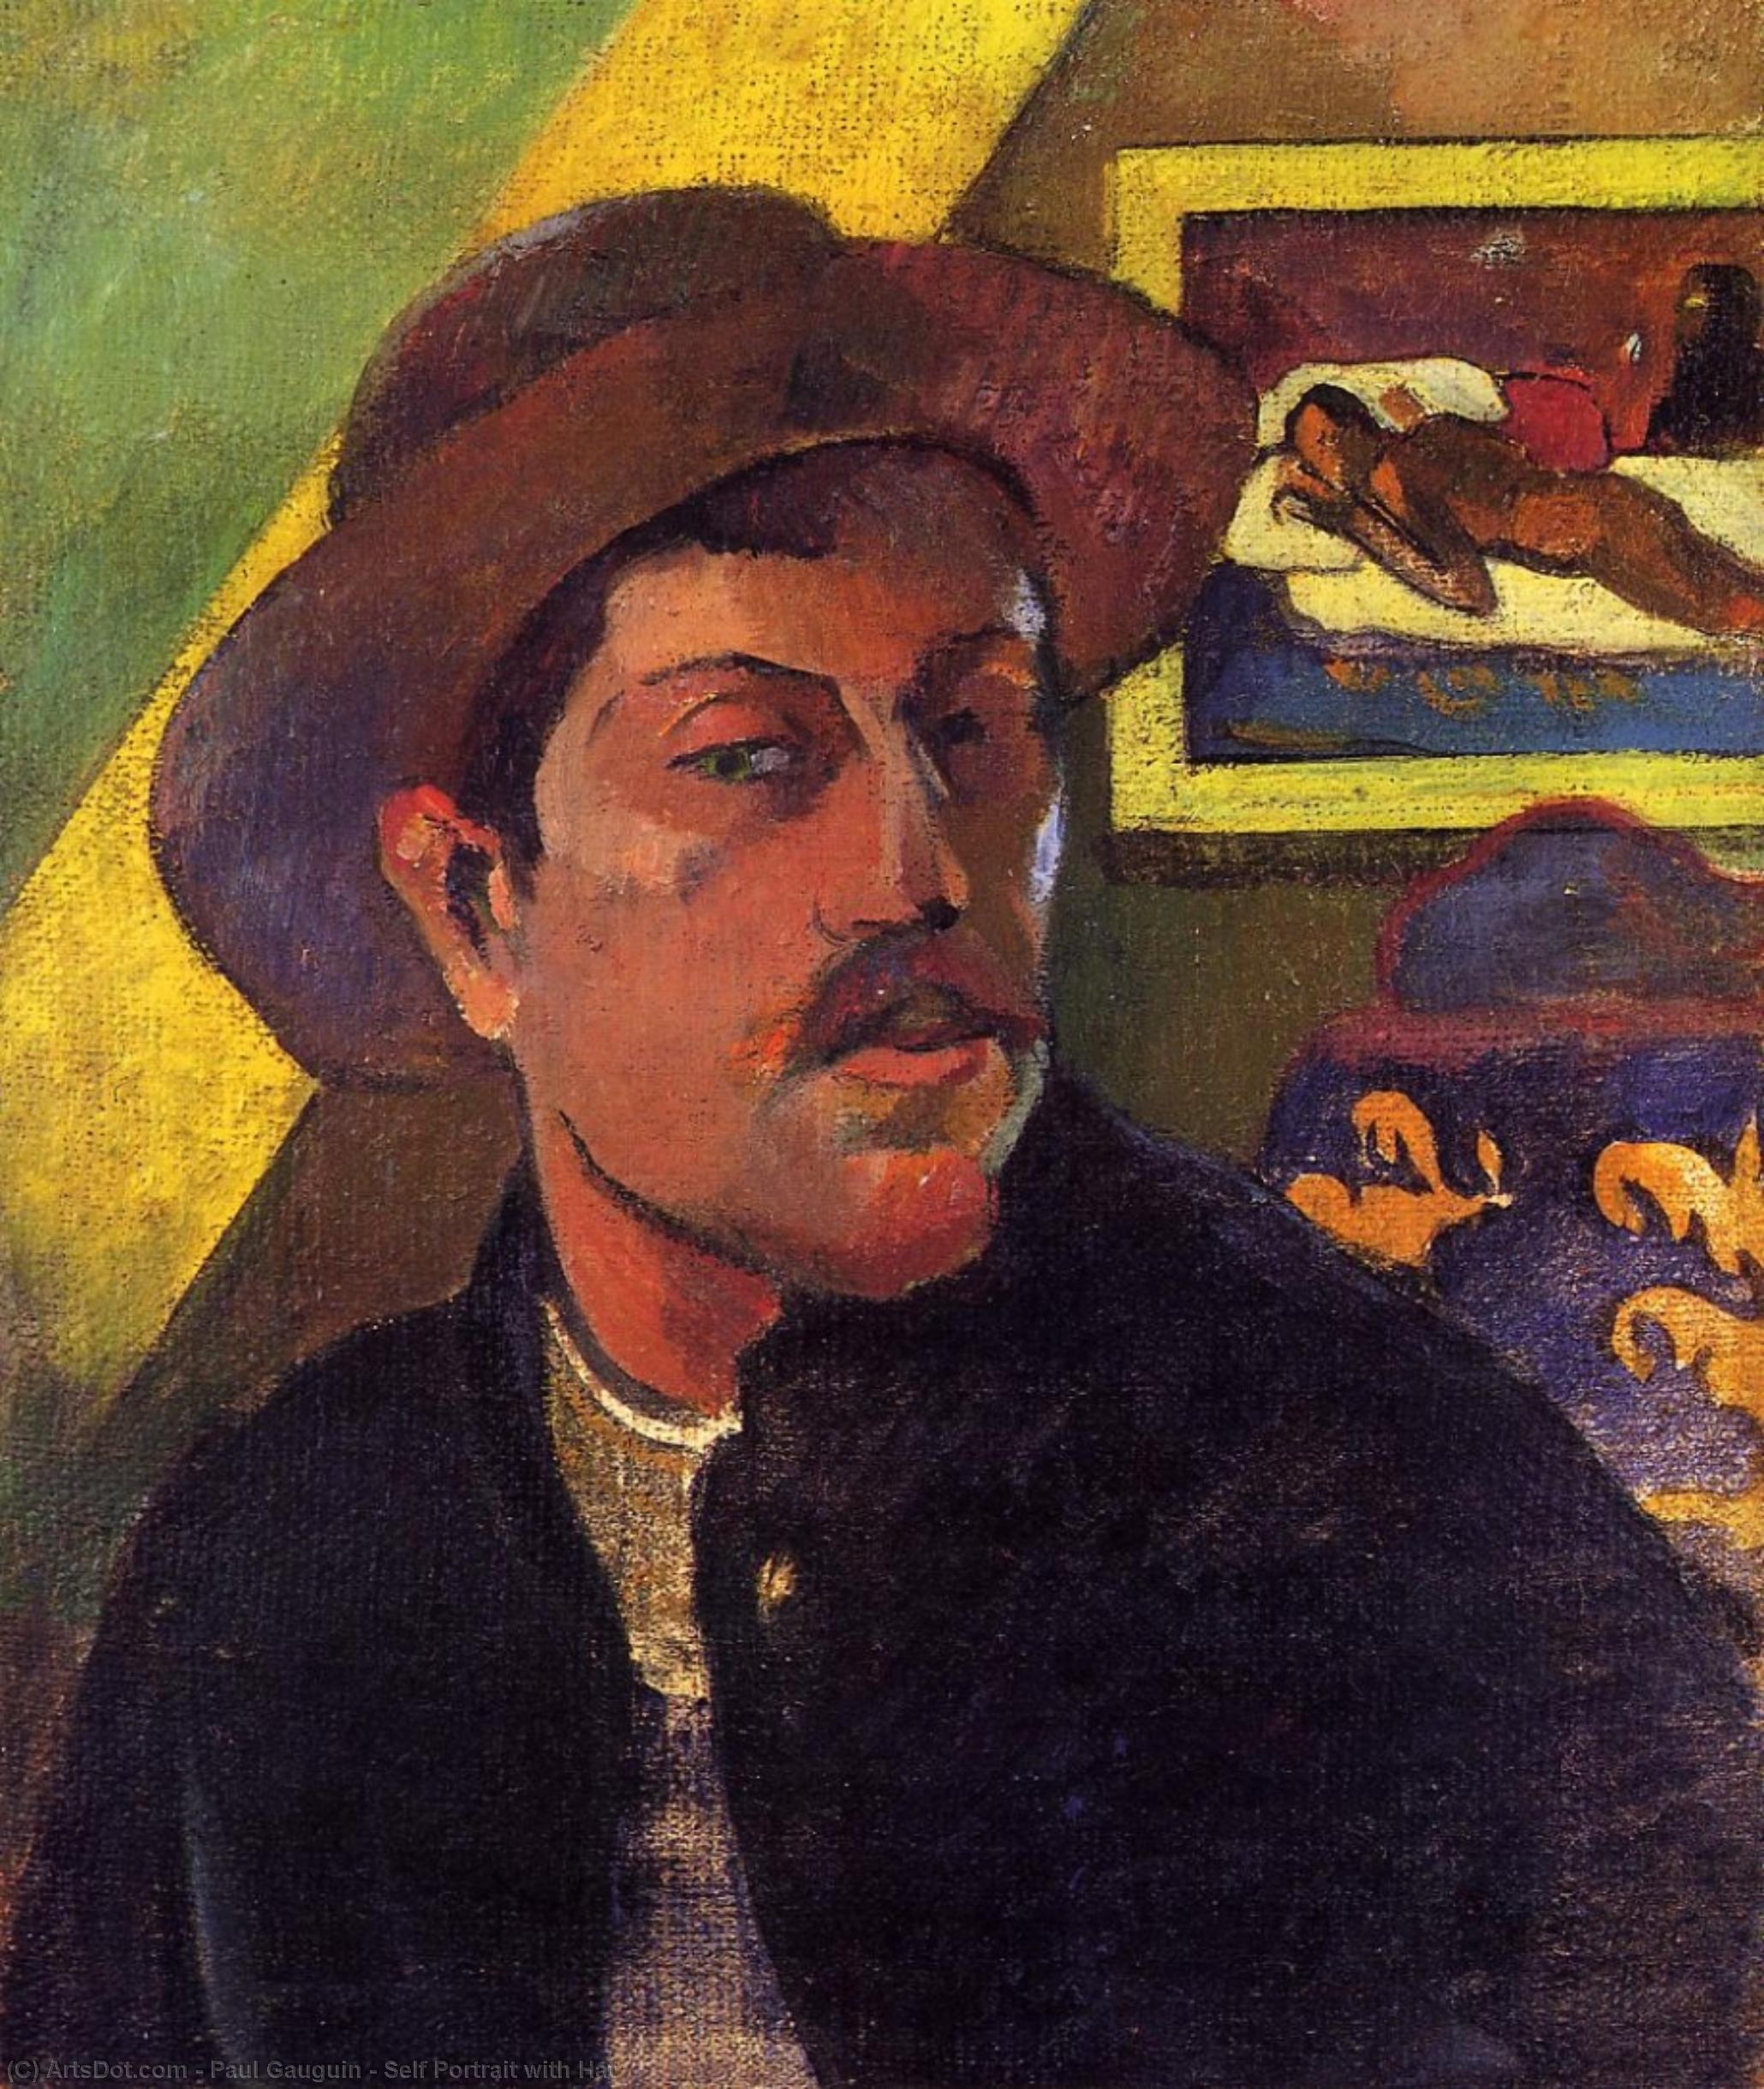 WikiOO.org - Энциклопедия изобразительного искусства - Живопись, Картины  Paul Gauguin - Автопортрет с  шляпа